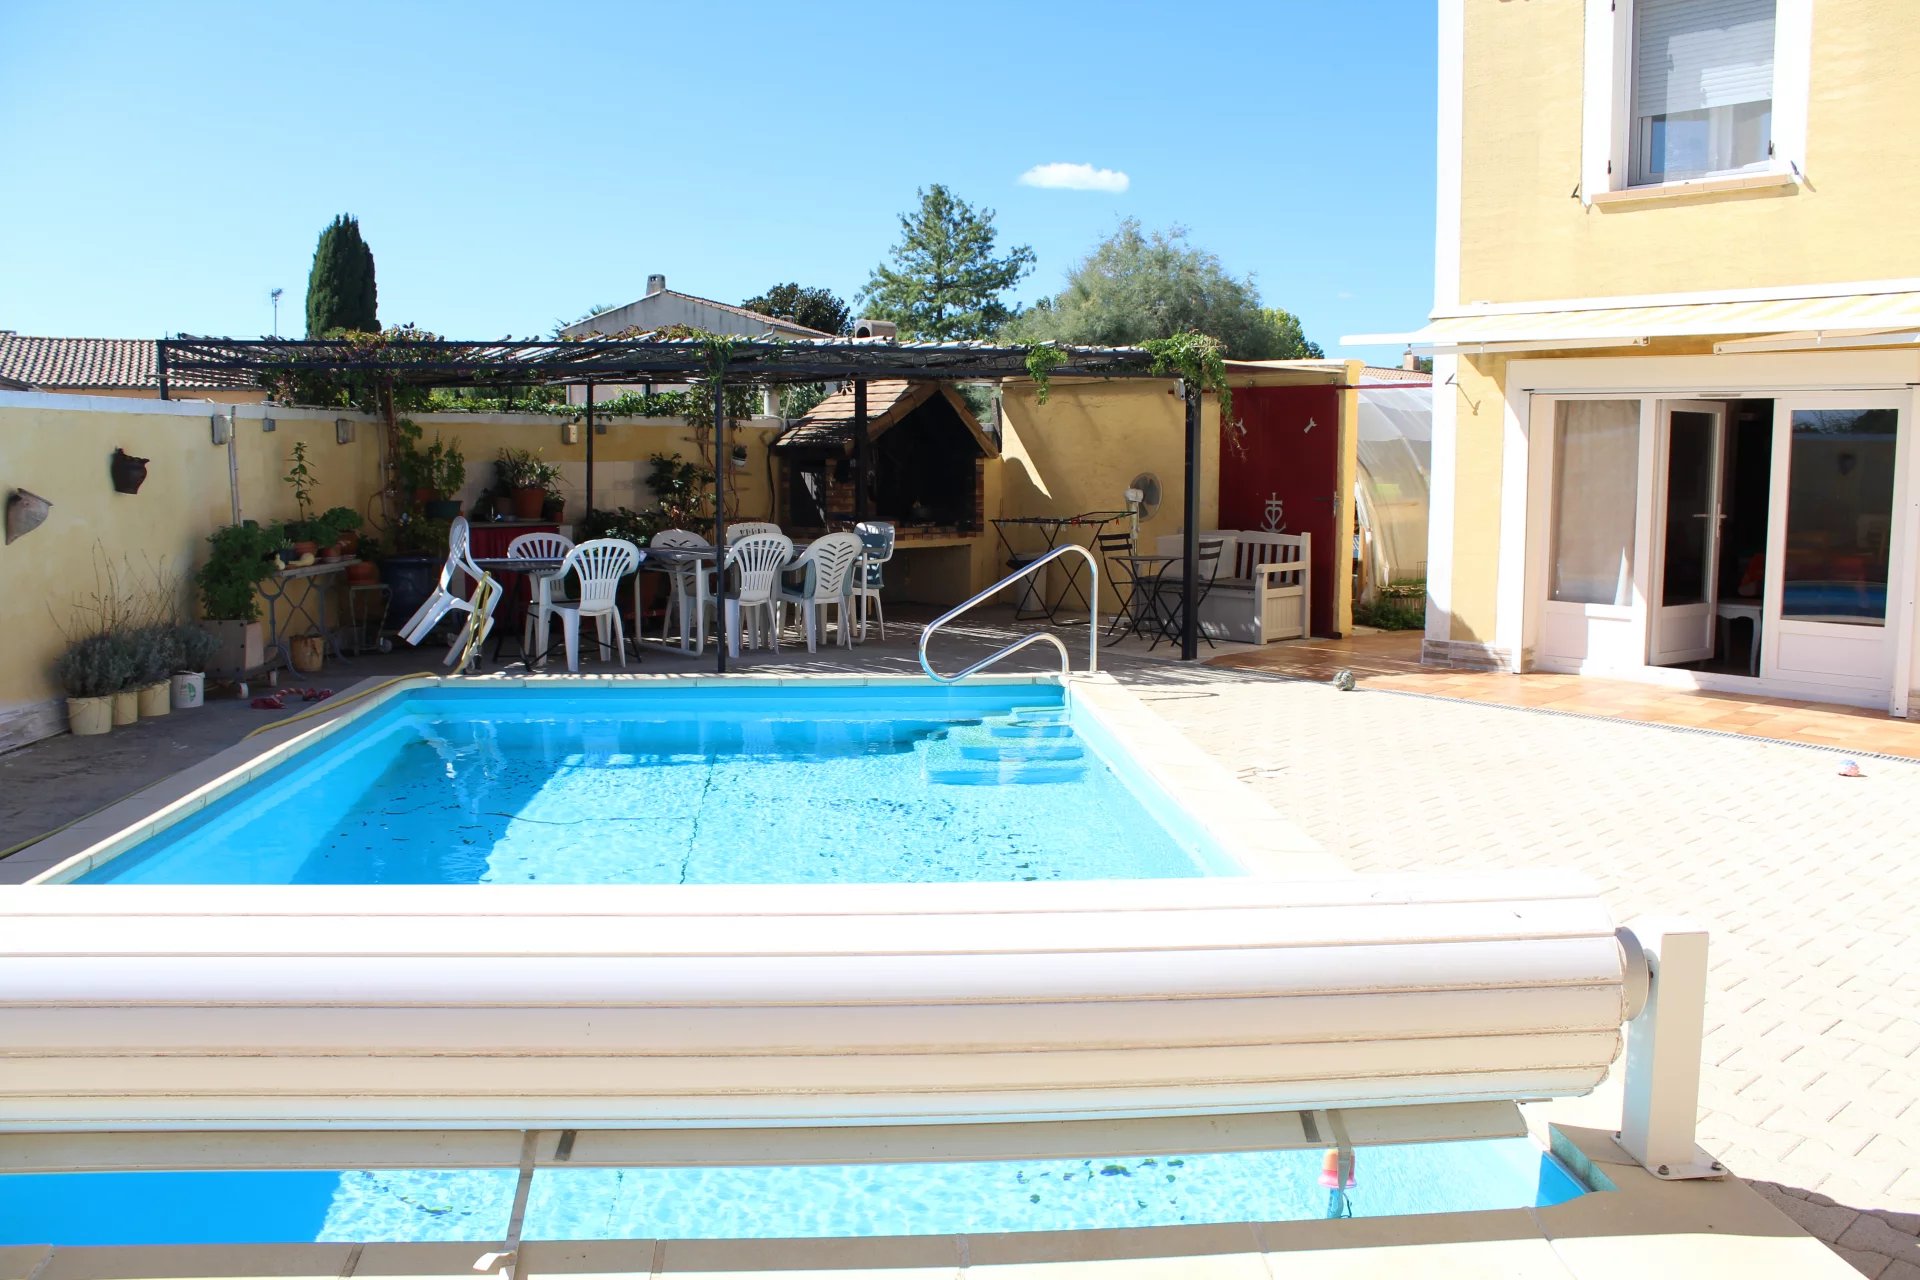 UCHAUD - Maison 125 M² avec piscine - 299 000 € FAI